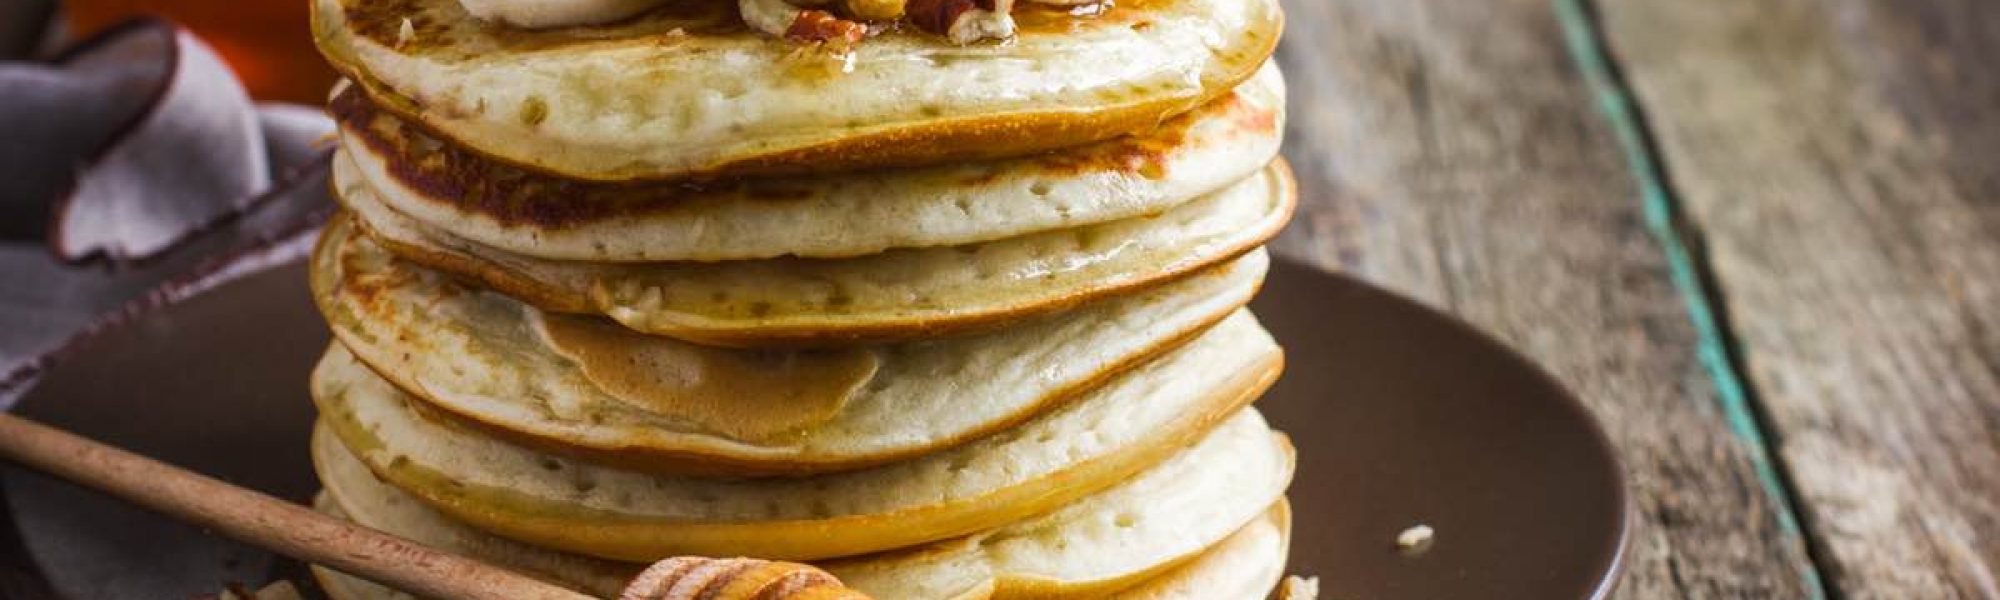 pancakes_banananut